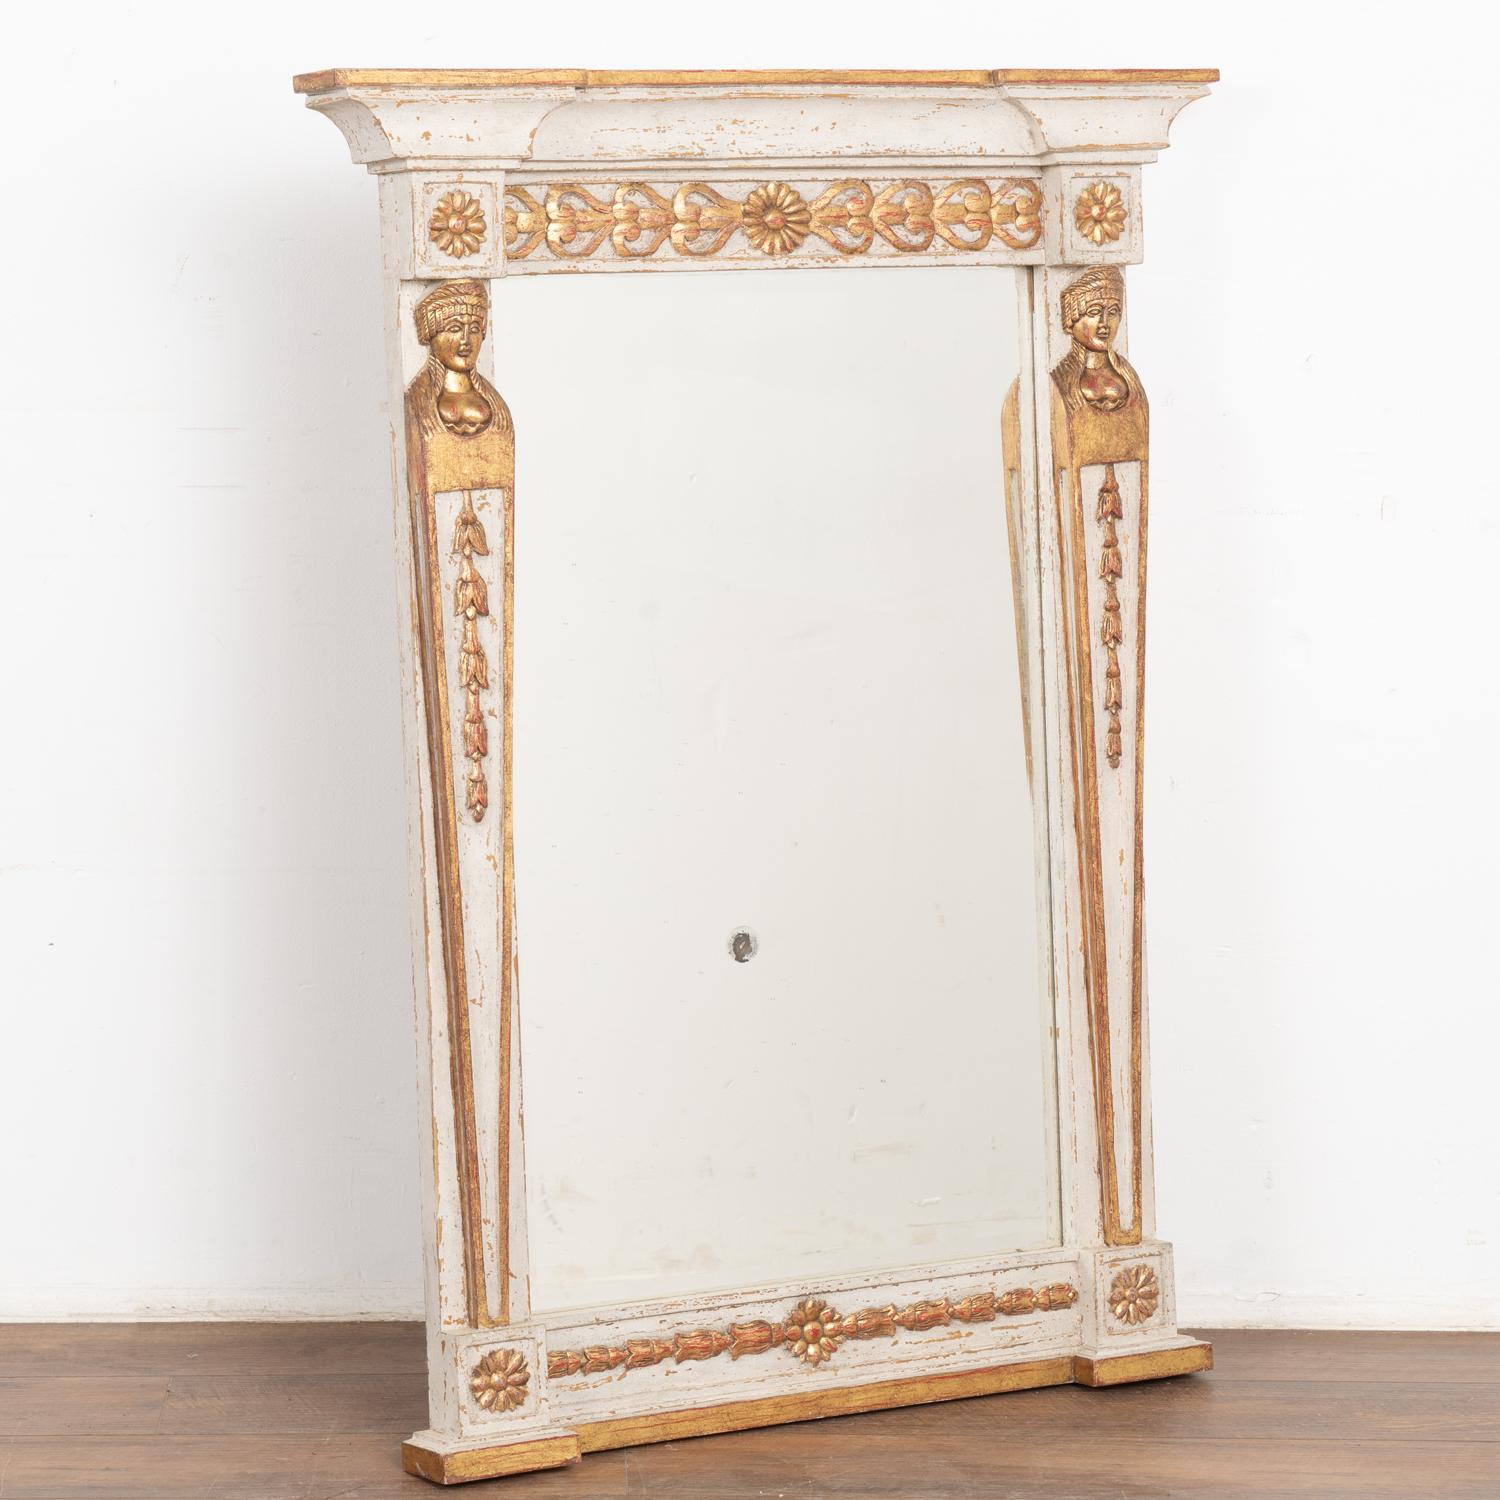 Joli miroir de style gustavien avec une finition peinte en gris clair avec des nuances de blanc. Accents sculptés en or doré avec des nuances de rouge.
D'une hauteur d'un peu moins de 4 pieds, sa taille lui permet d'être exposée dans une grande